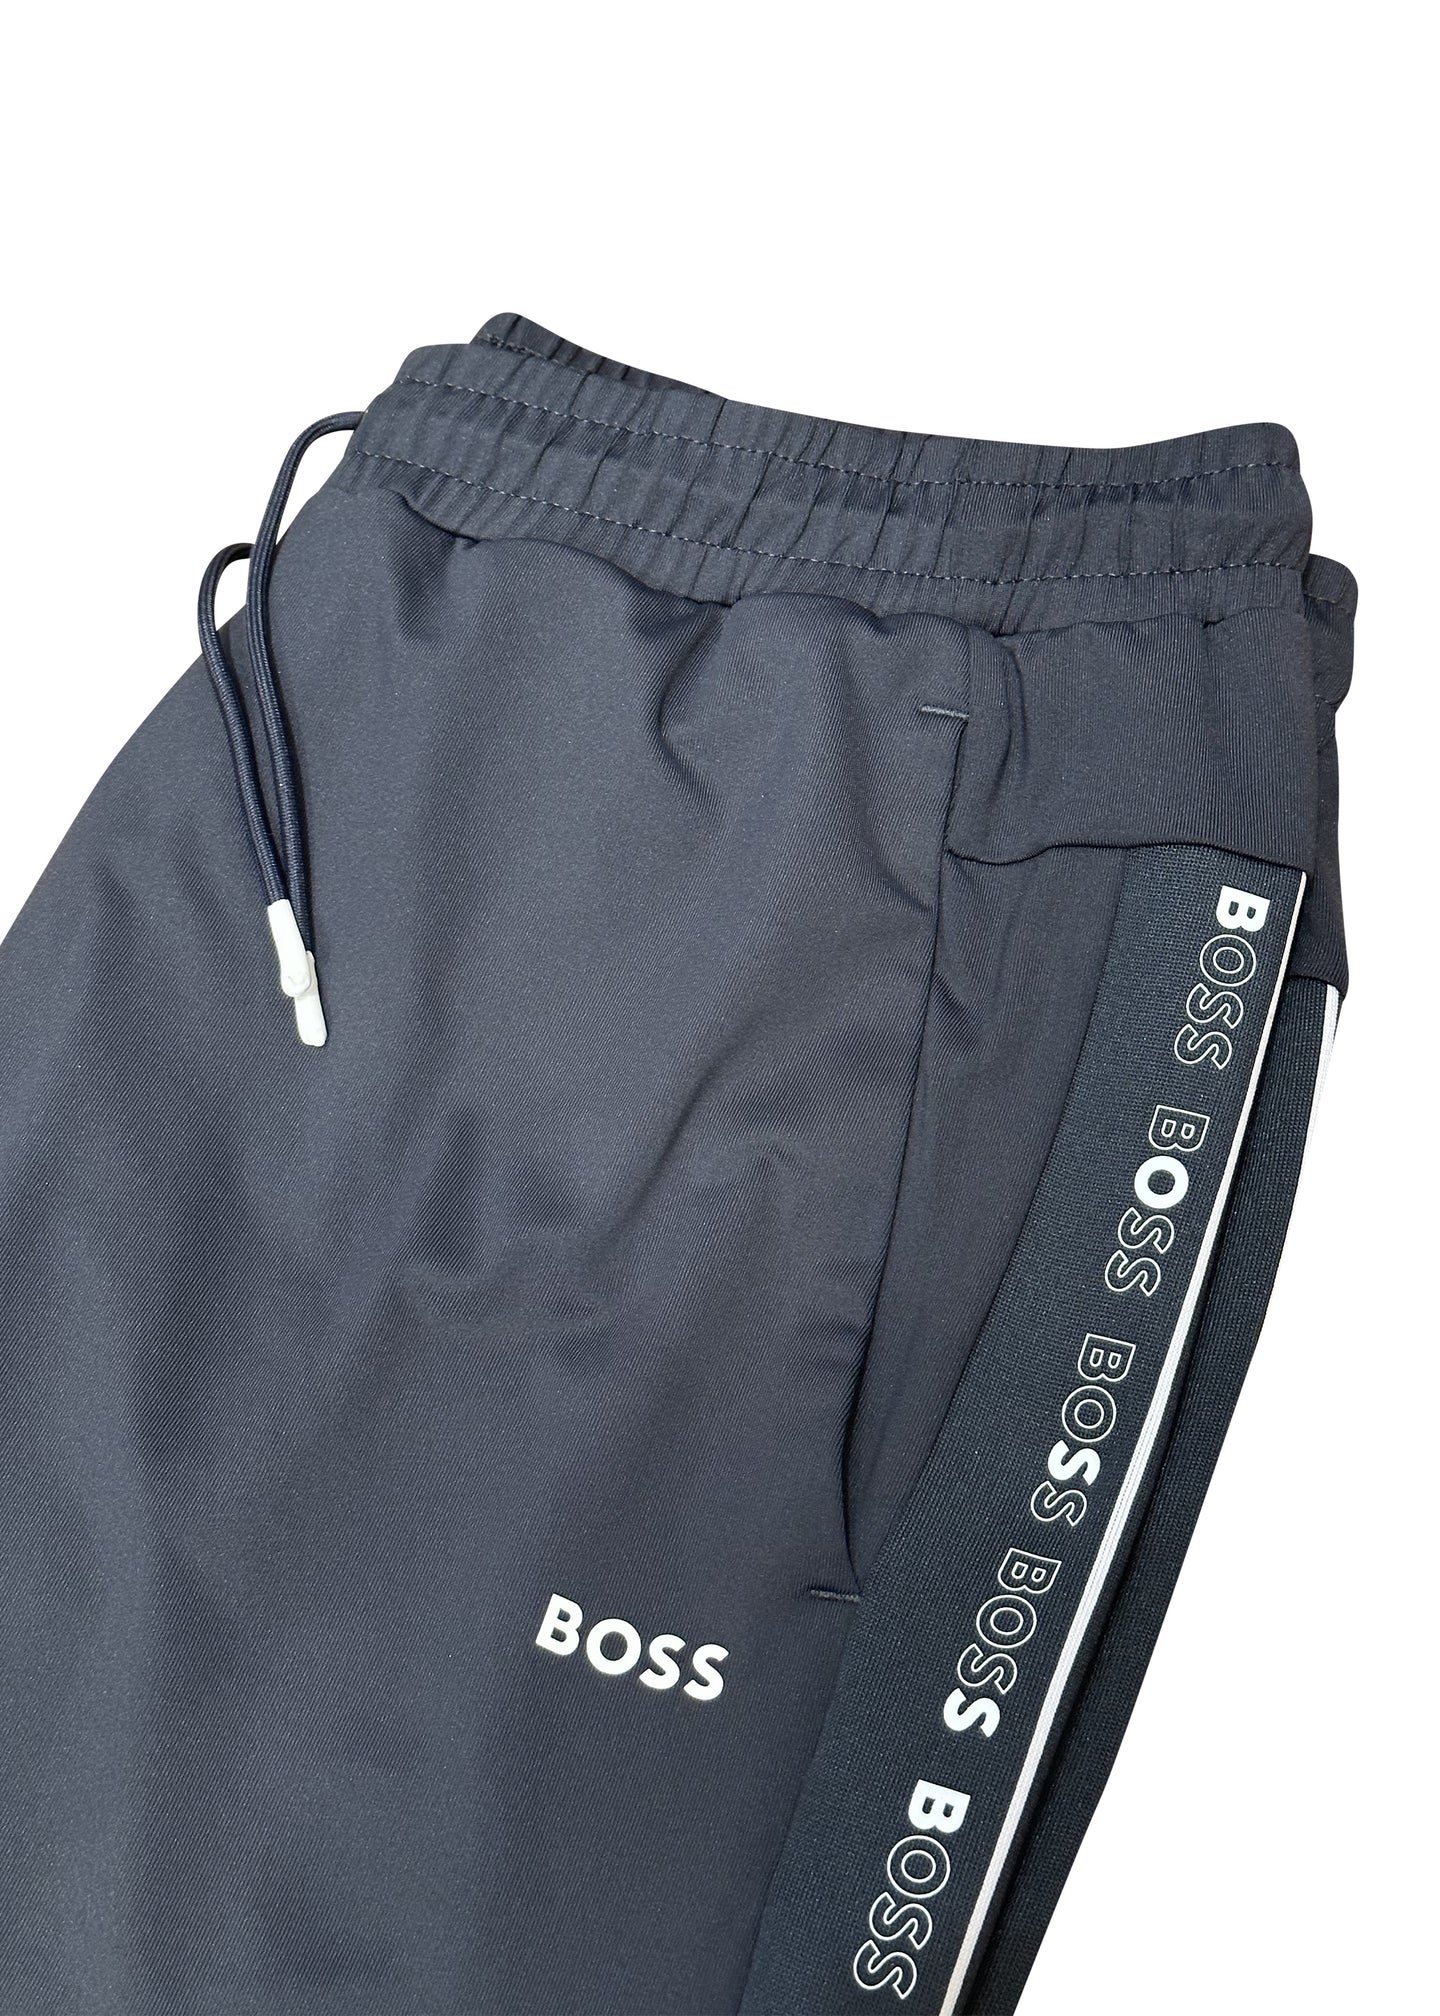 Boss - Tape Side Detail Boss Logo Jogs - 300531 - Navy